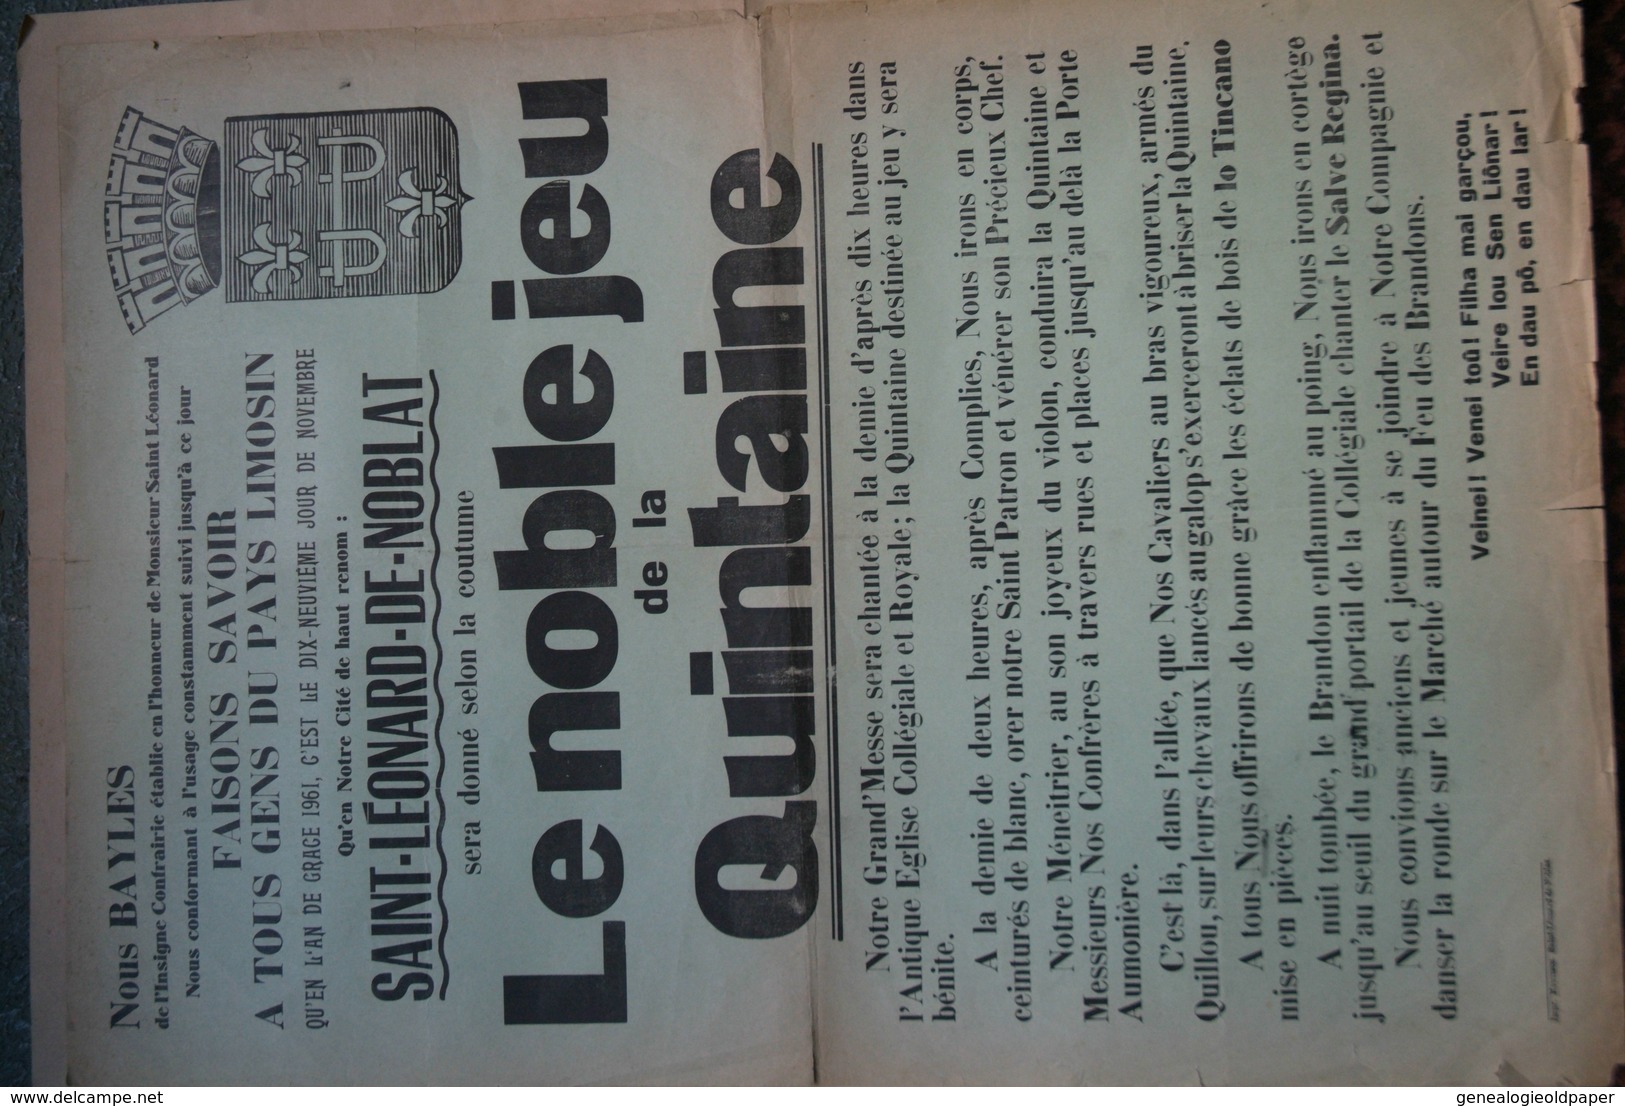 87 -ST SAINT LEONARD NOBLAT-RARE AFFICHE LE NOBLE JEU DE LA QUINTAINE- 1961-BAYLES MESSE EGLISE -IMPRIMERIE MONTIBUS - Posters